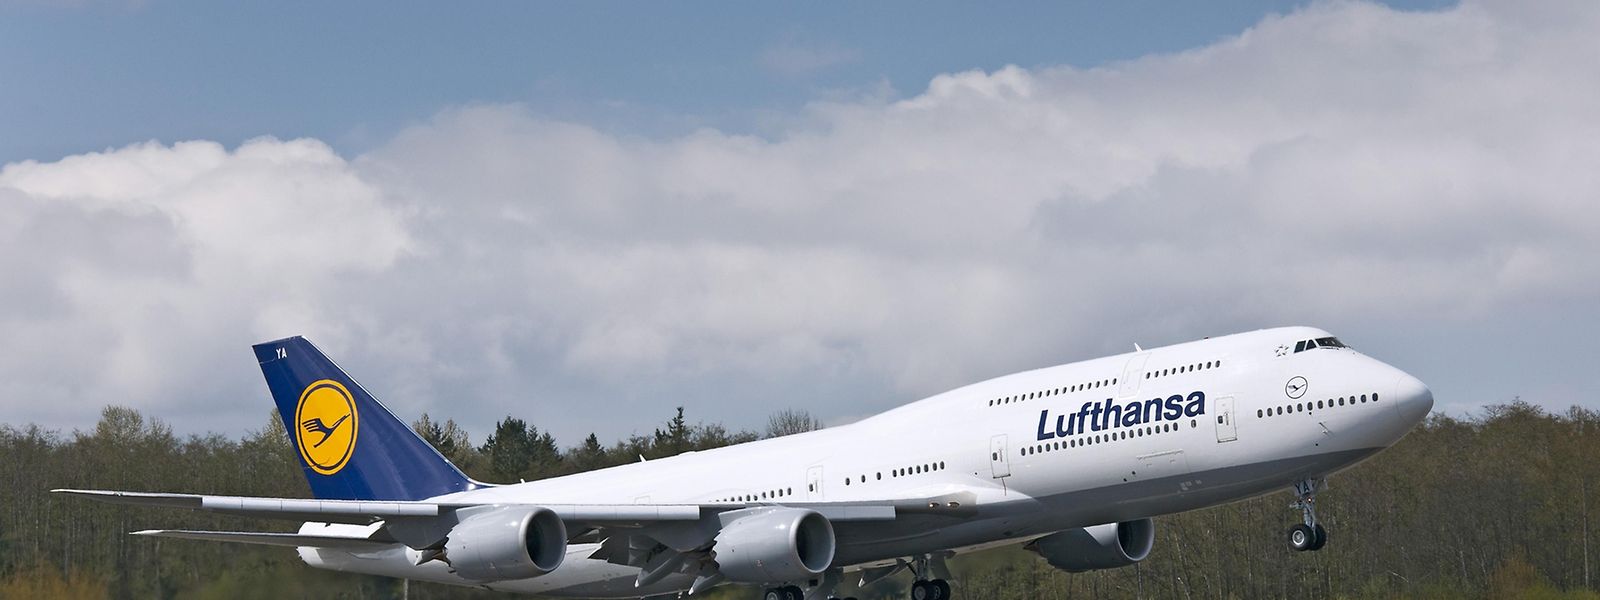 Lufthansa gehört zu den letzten großen Fluggesellschaften, die die 747-8 Intercontinental betreiben.